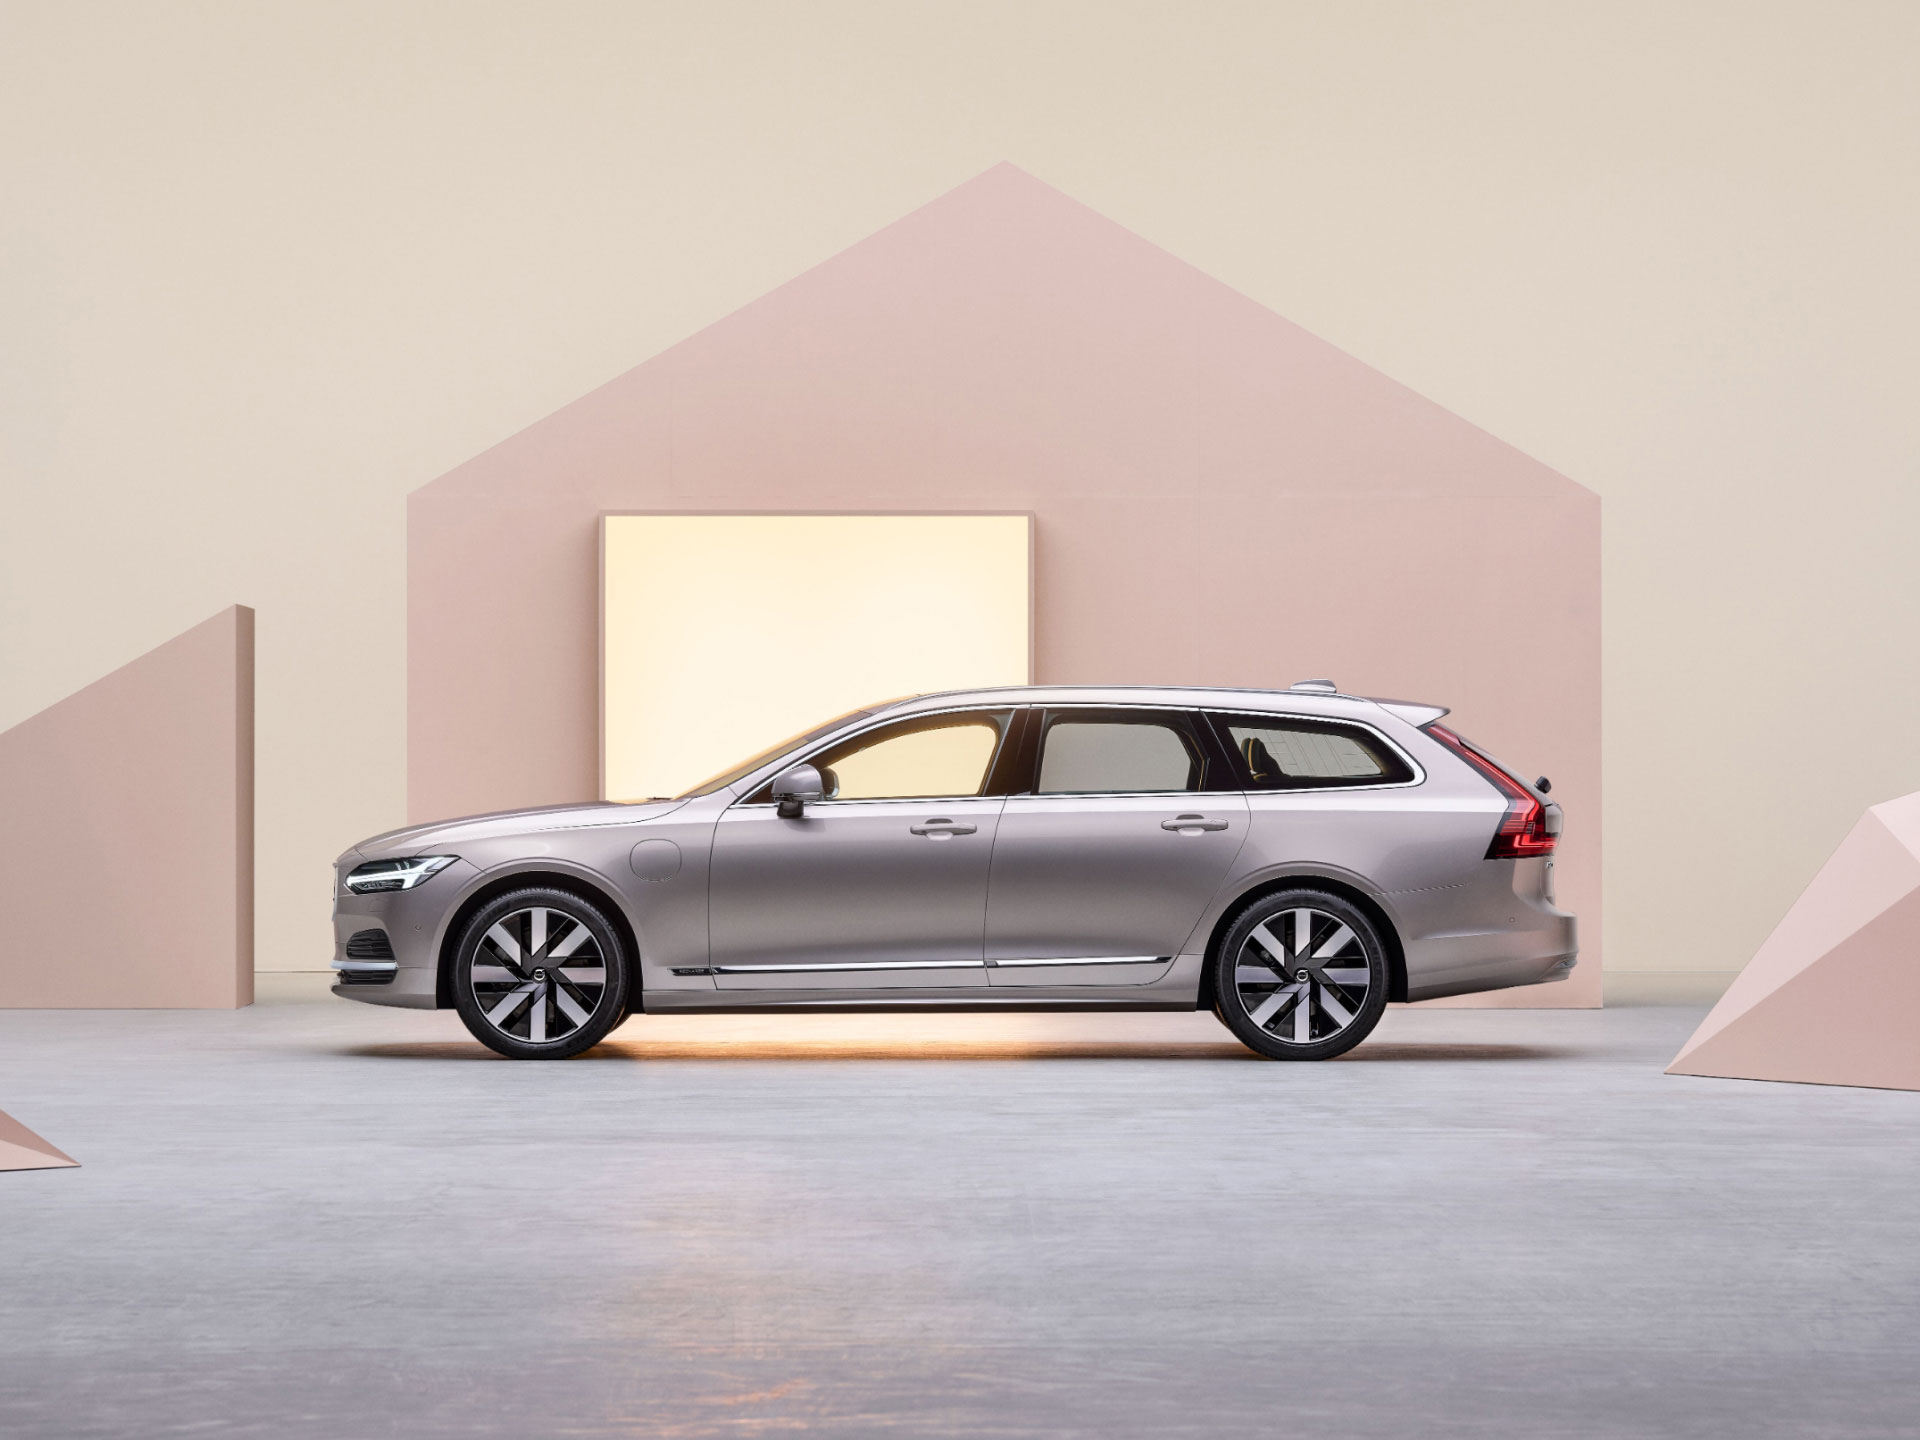 Hình ảnh quan sát góc rộng của mặt bên xe Volvo Estate plug-in hybrid đang được cắm sạc điện.